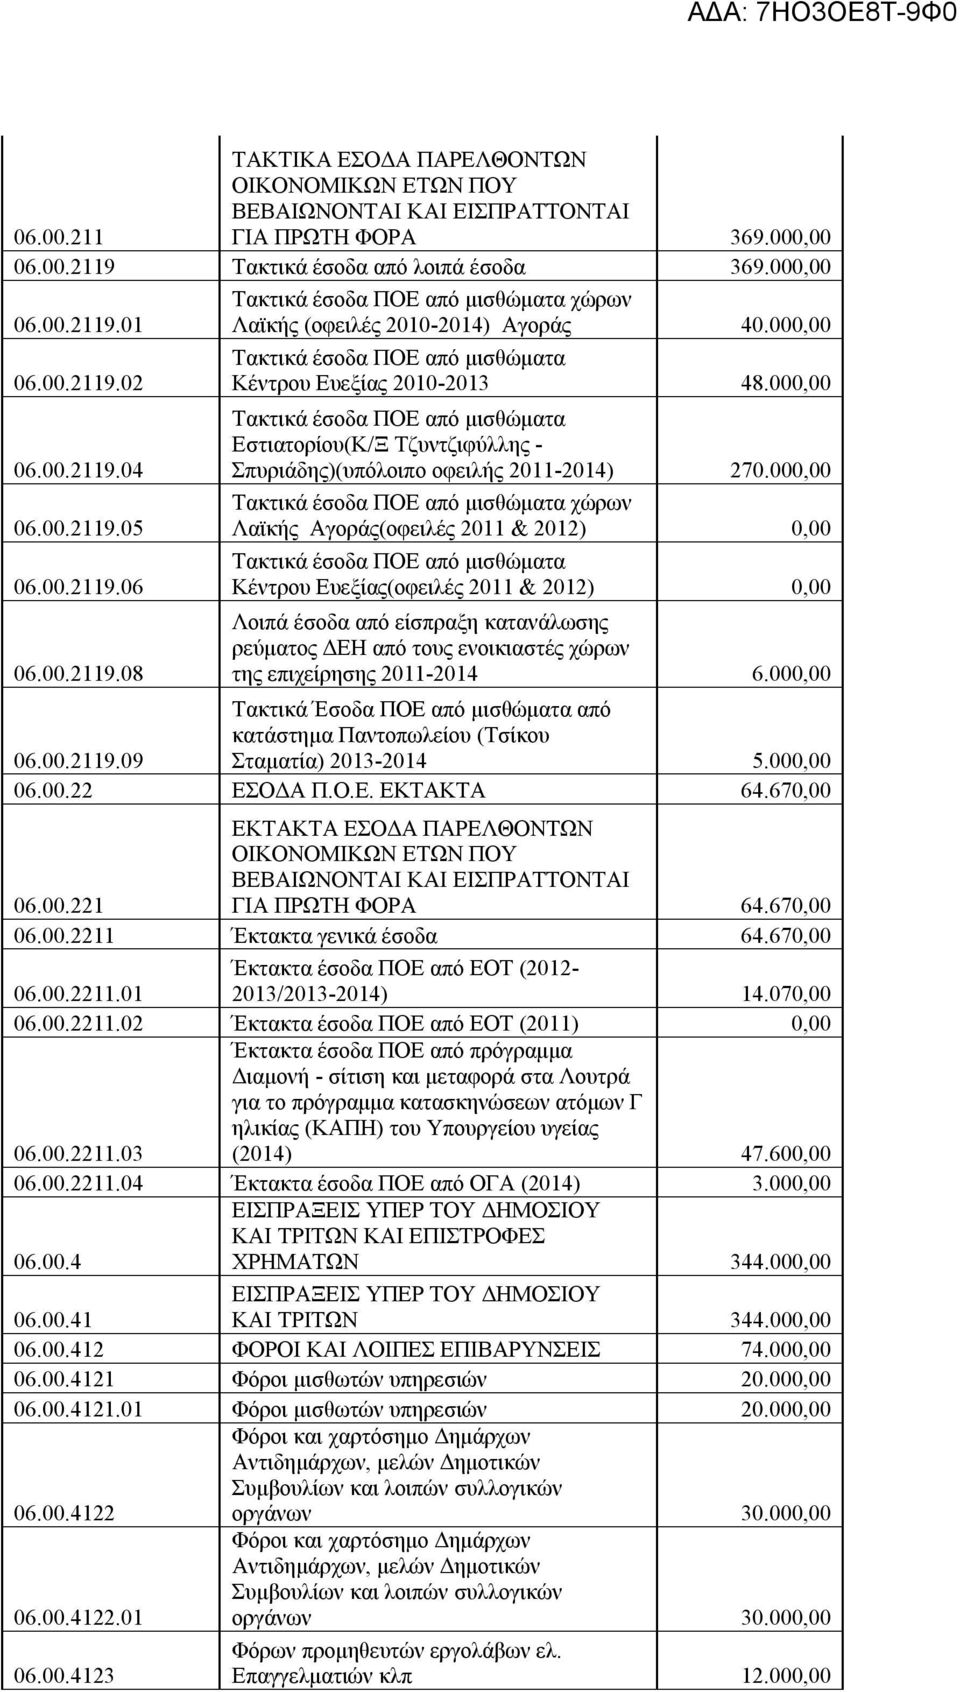 000,00 Τακτικά έσοδα ΠΟΕ από μισθώματα Εστιατορίου(Κ/Ξ Τζυντζιφύλλης - Σπυριάδης)(υπόλοιπο οφειλής 2011-2014) 270.